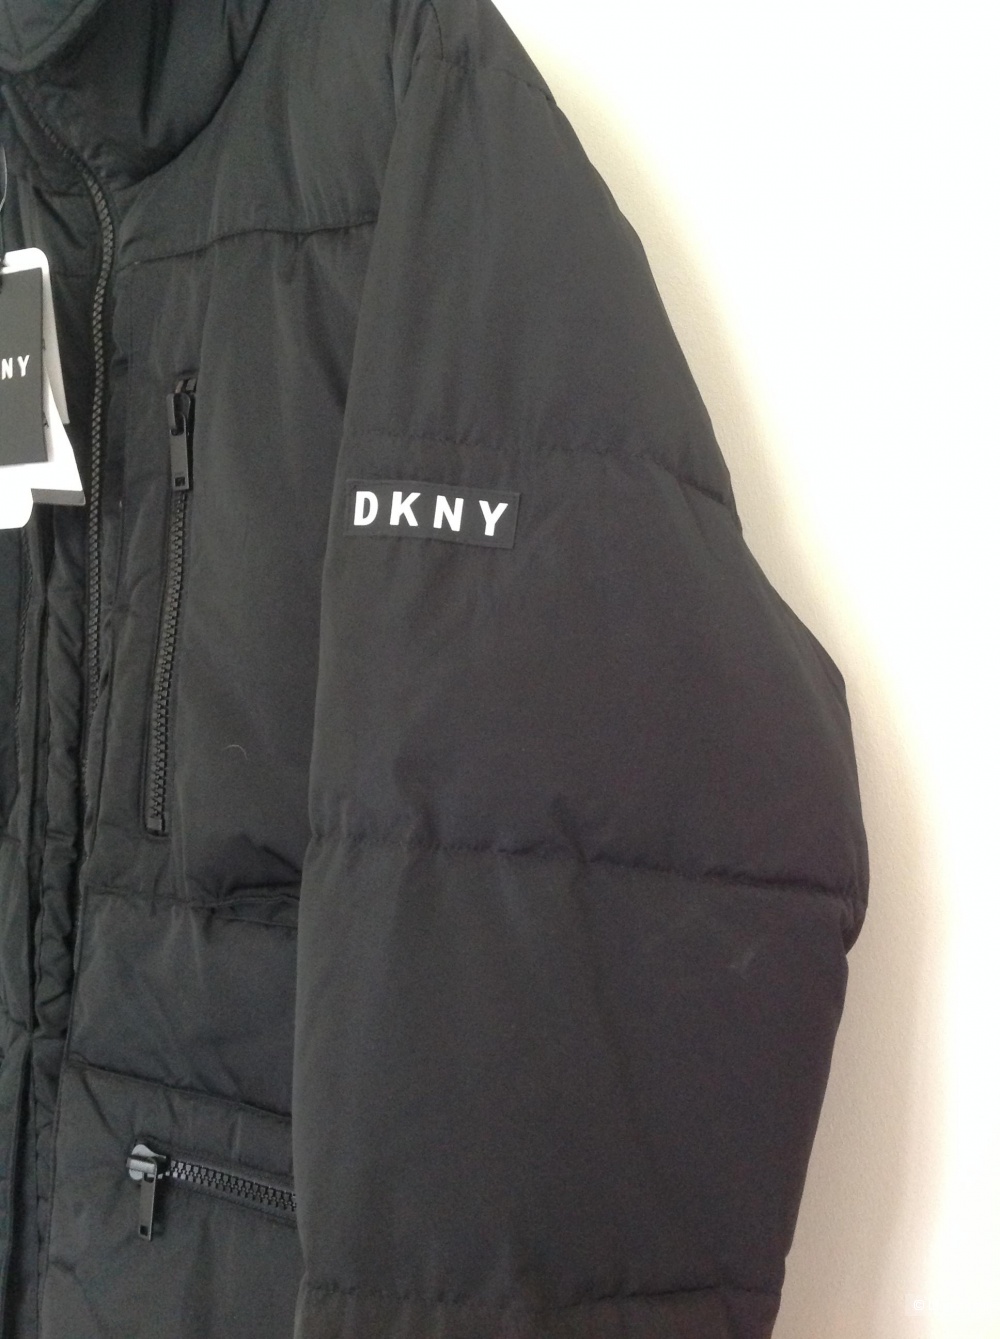 Пуховик парка DKNY, размер L, на 52-54-56